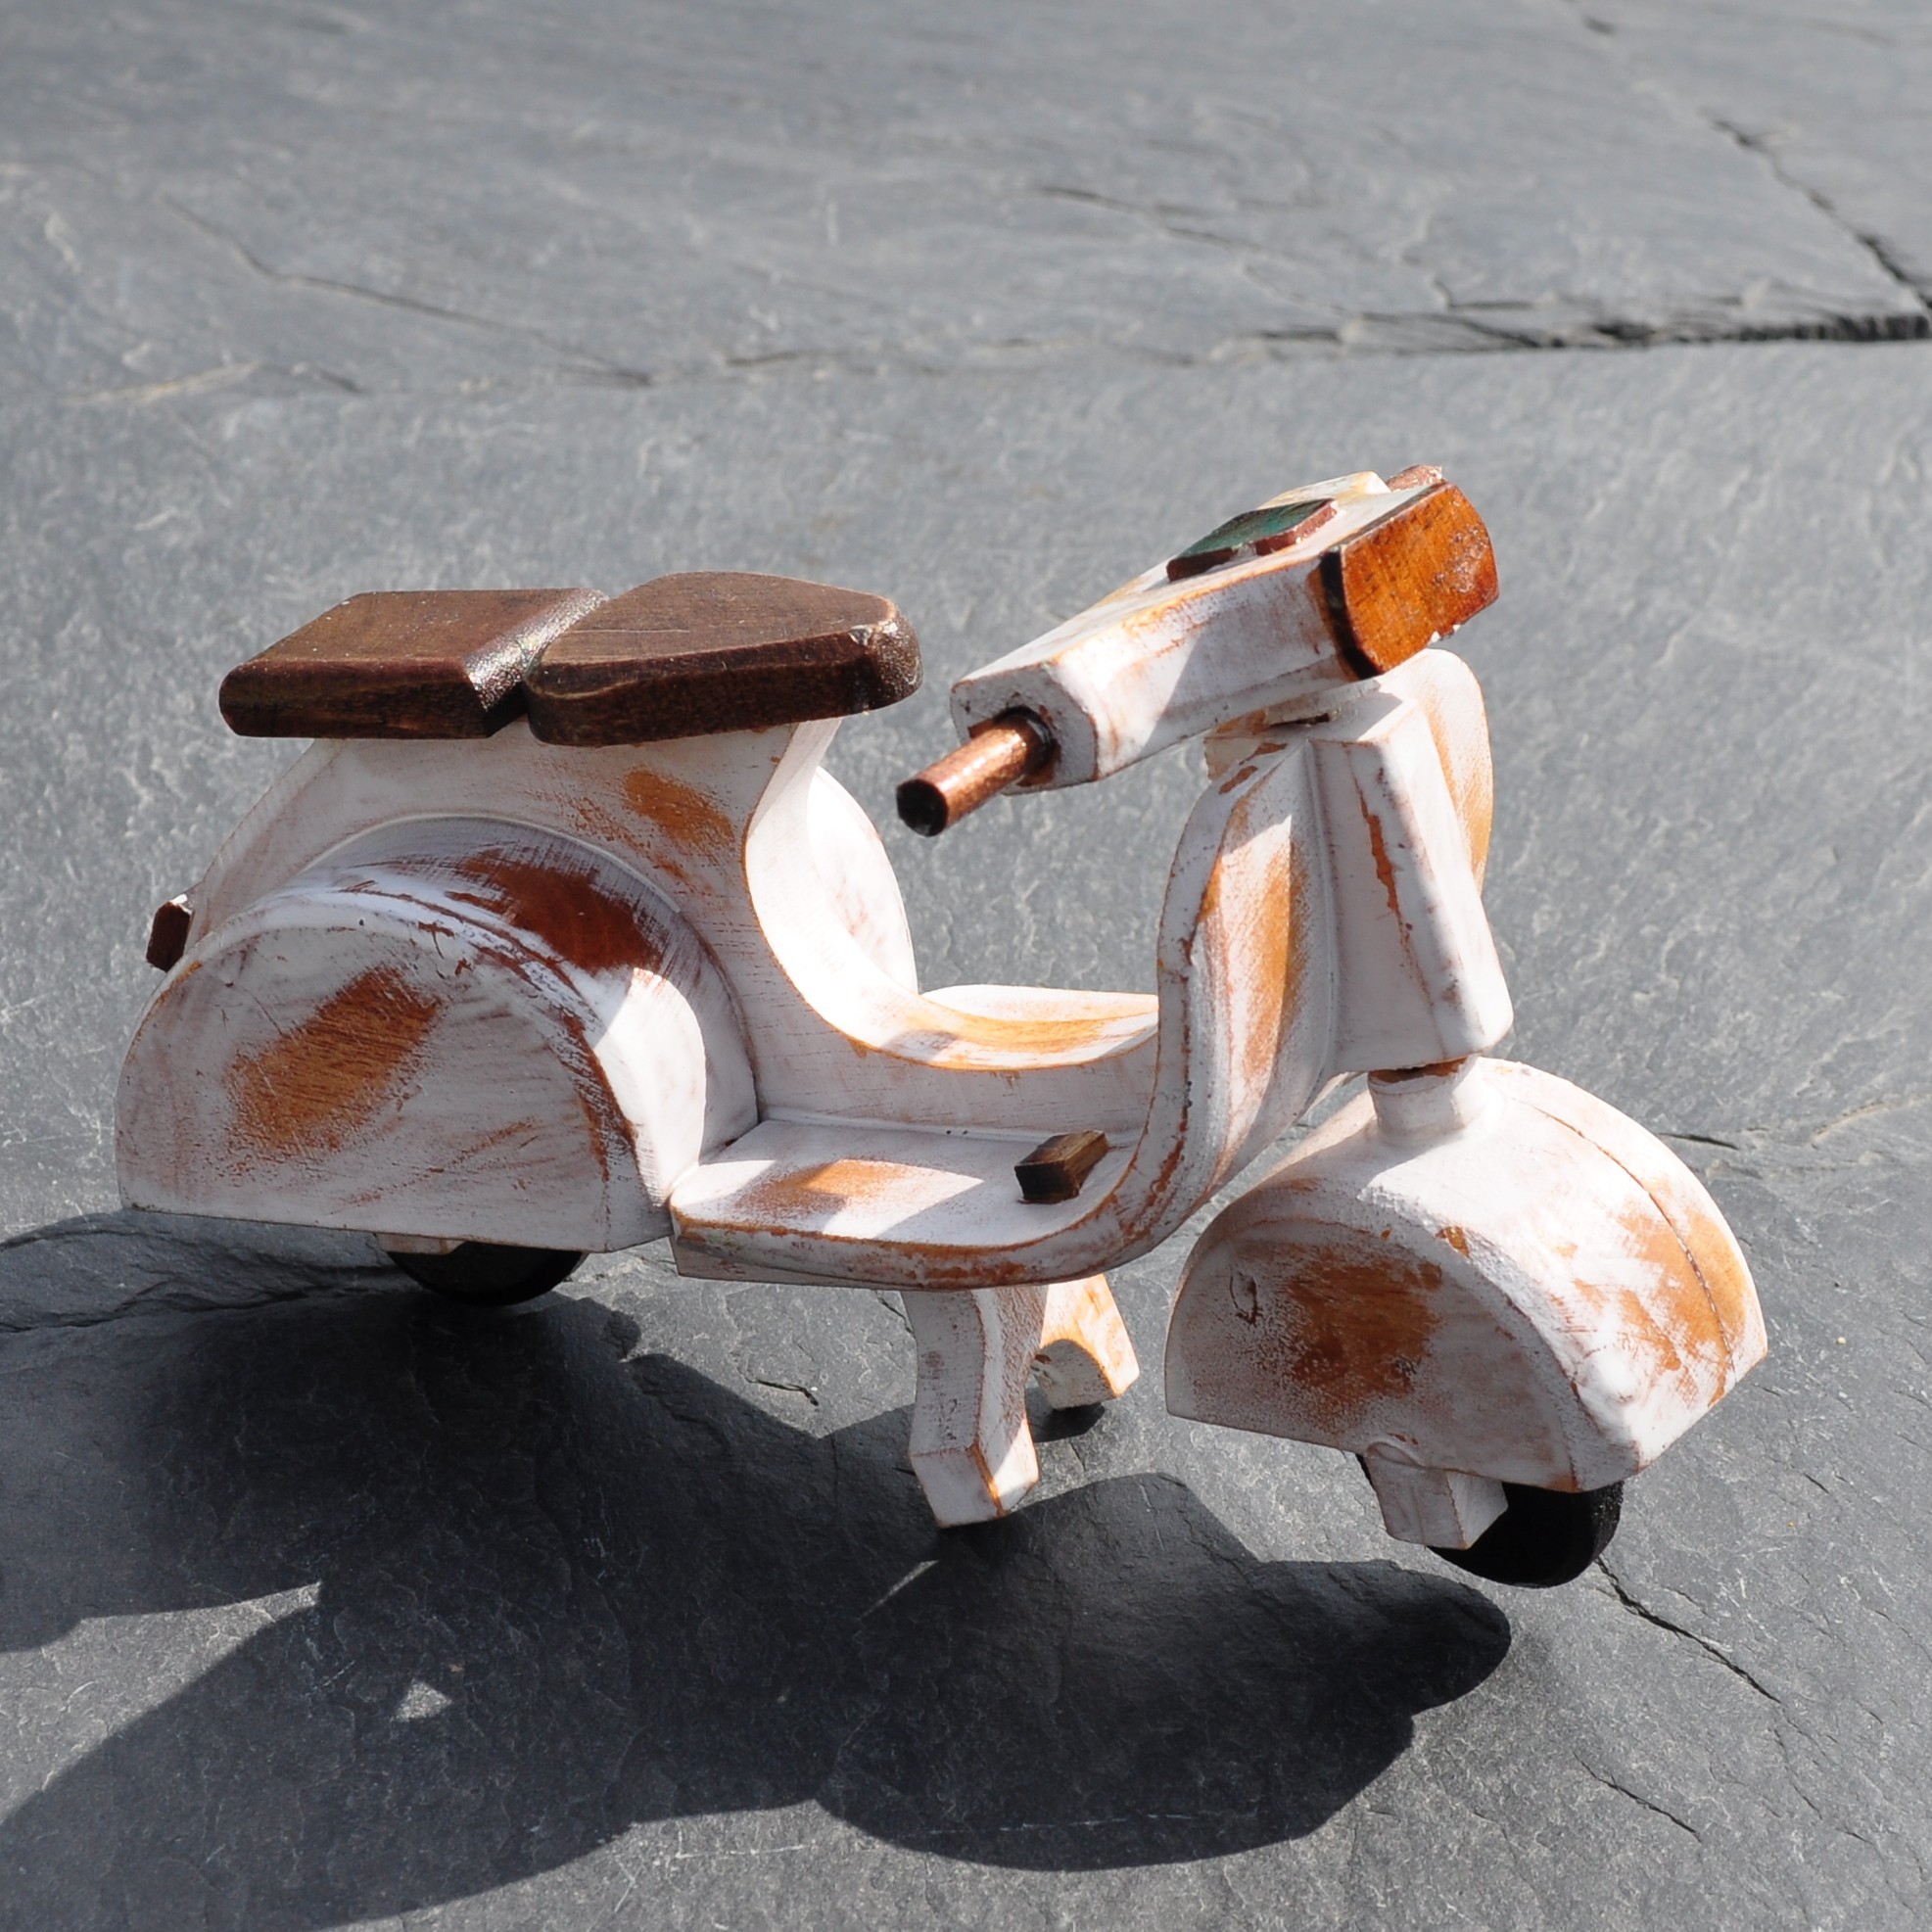 Une superbe miniature de scooter en bois recyclé entièrement fait main